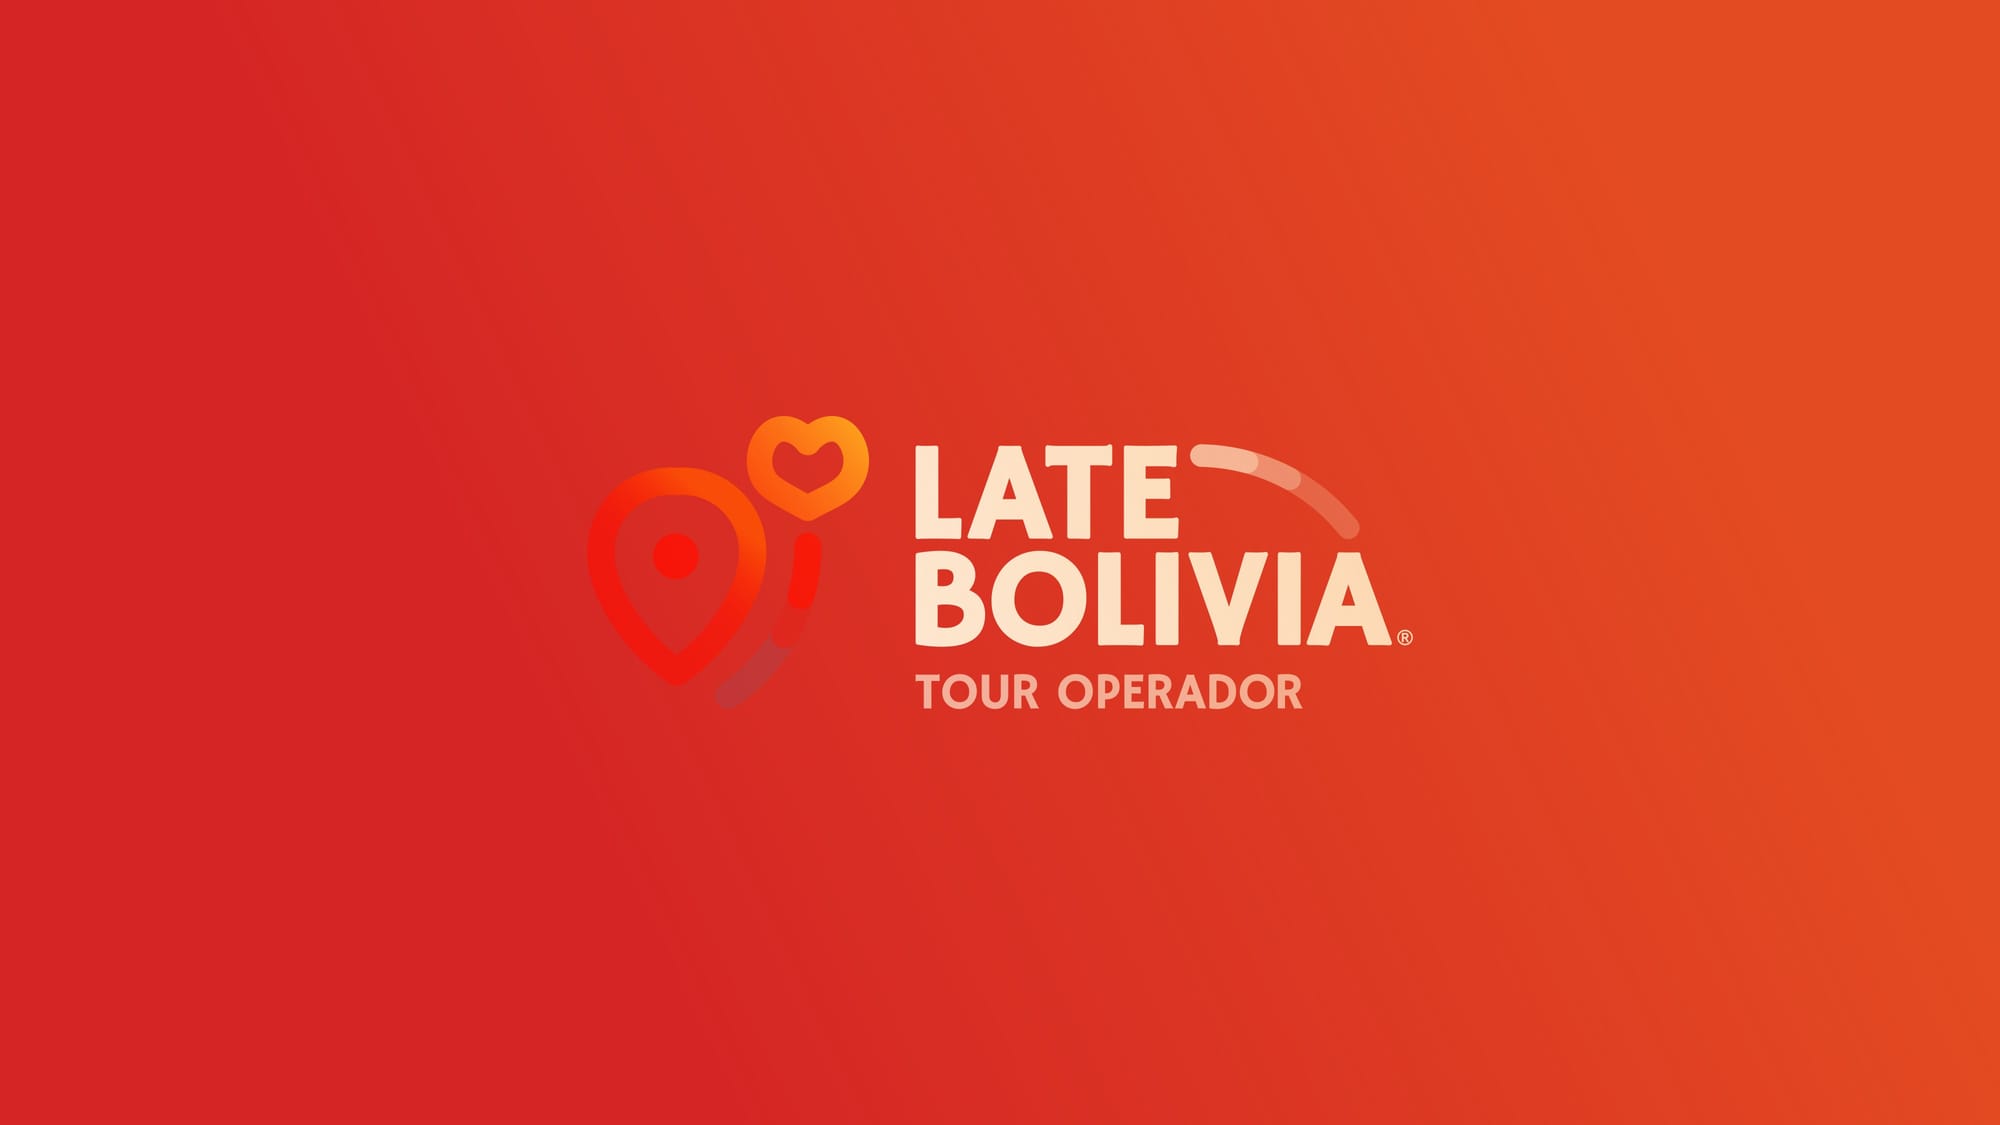 Late Bolivia® post image